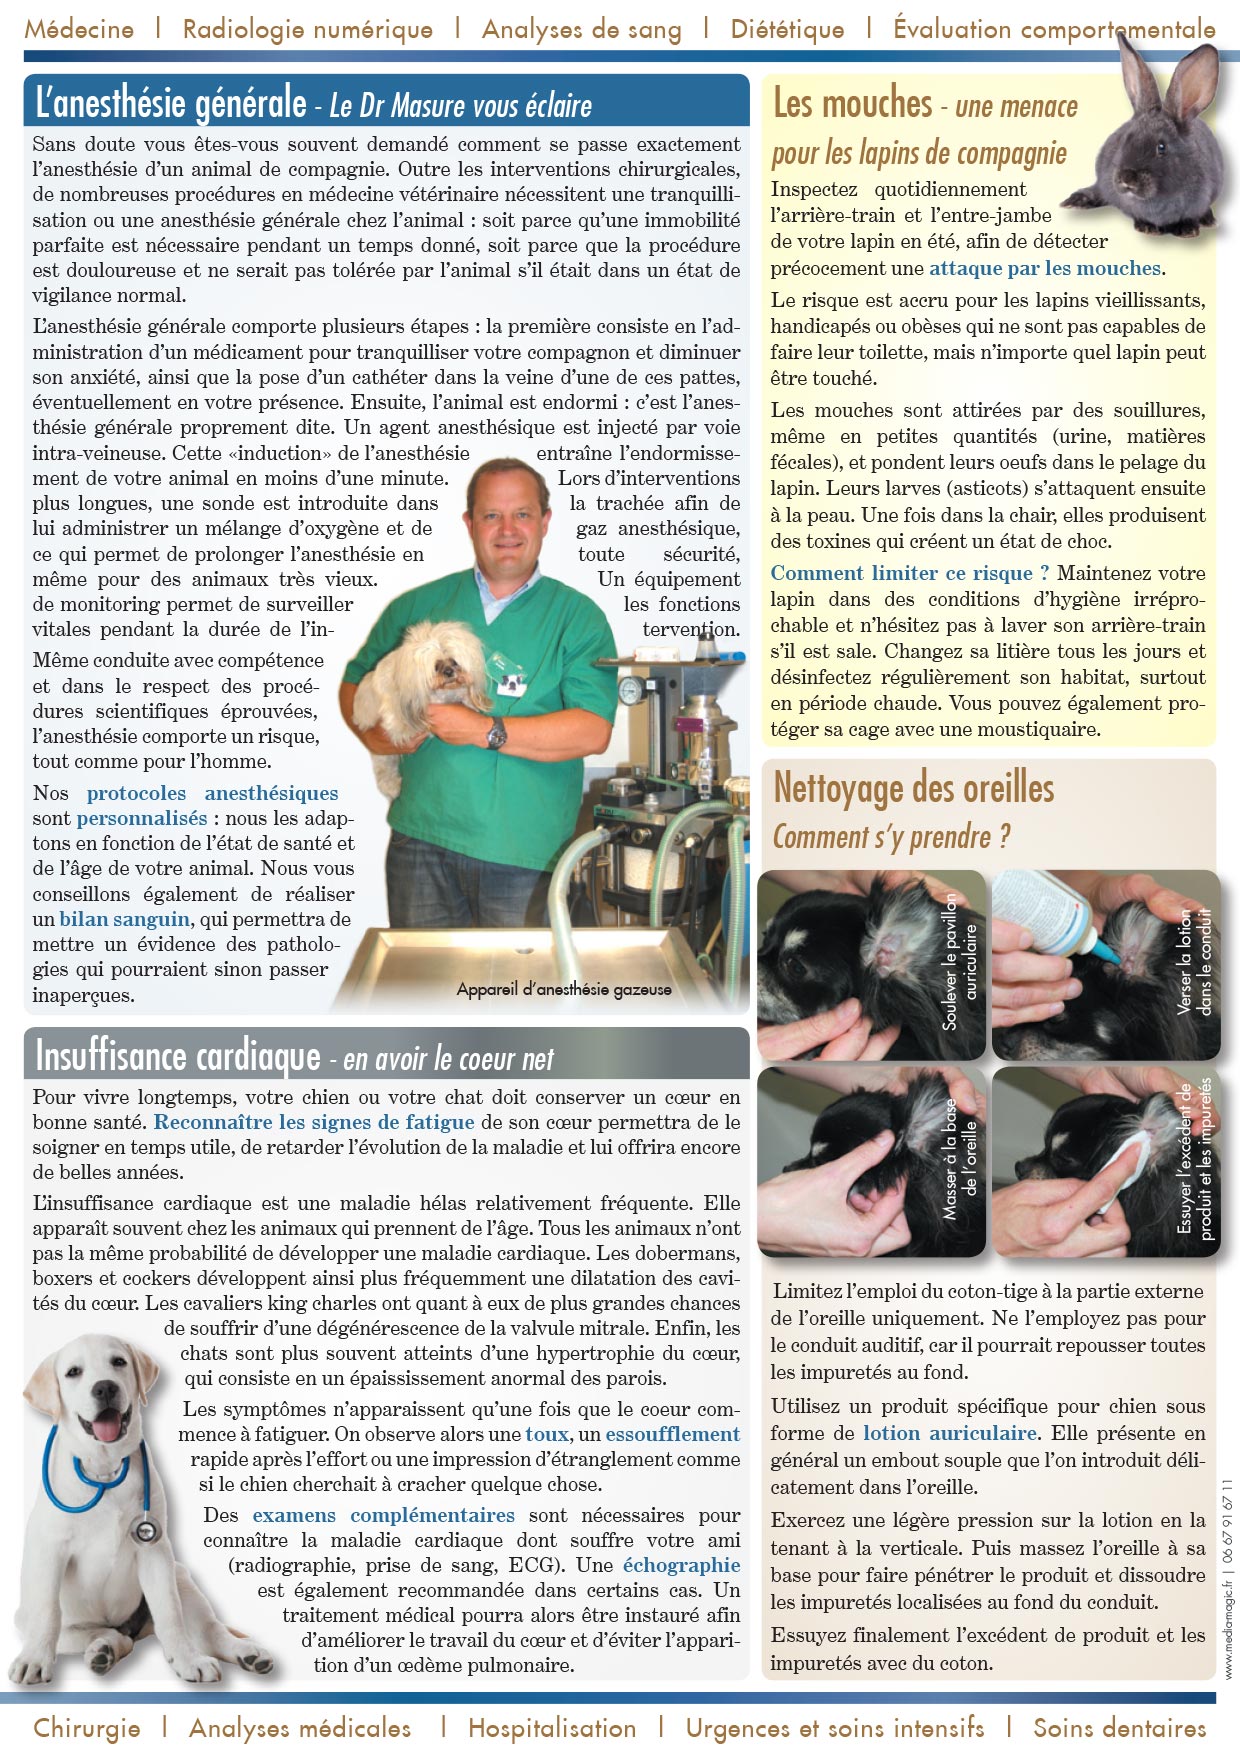 NL Eté 2012 page 2